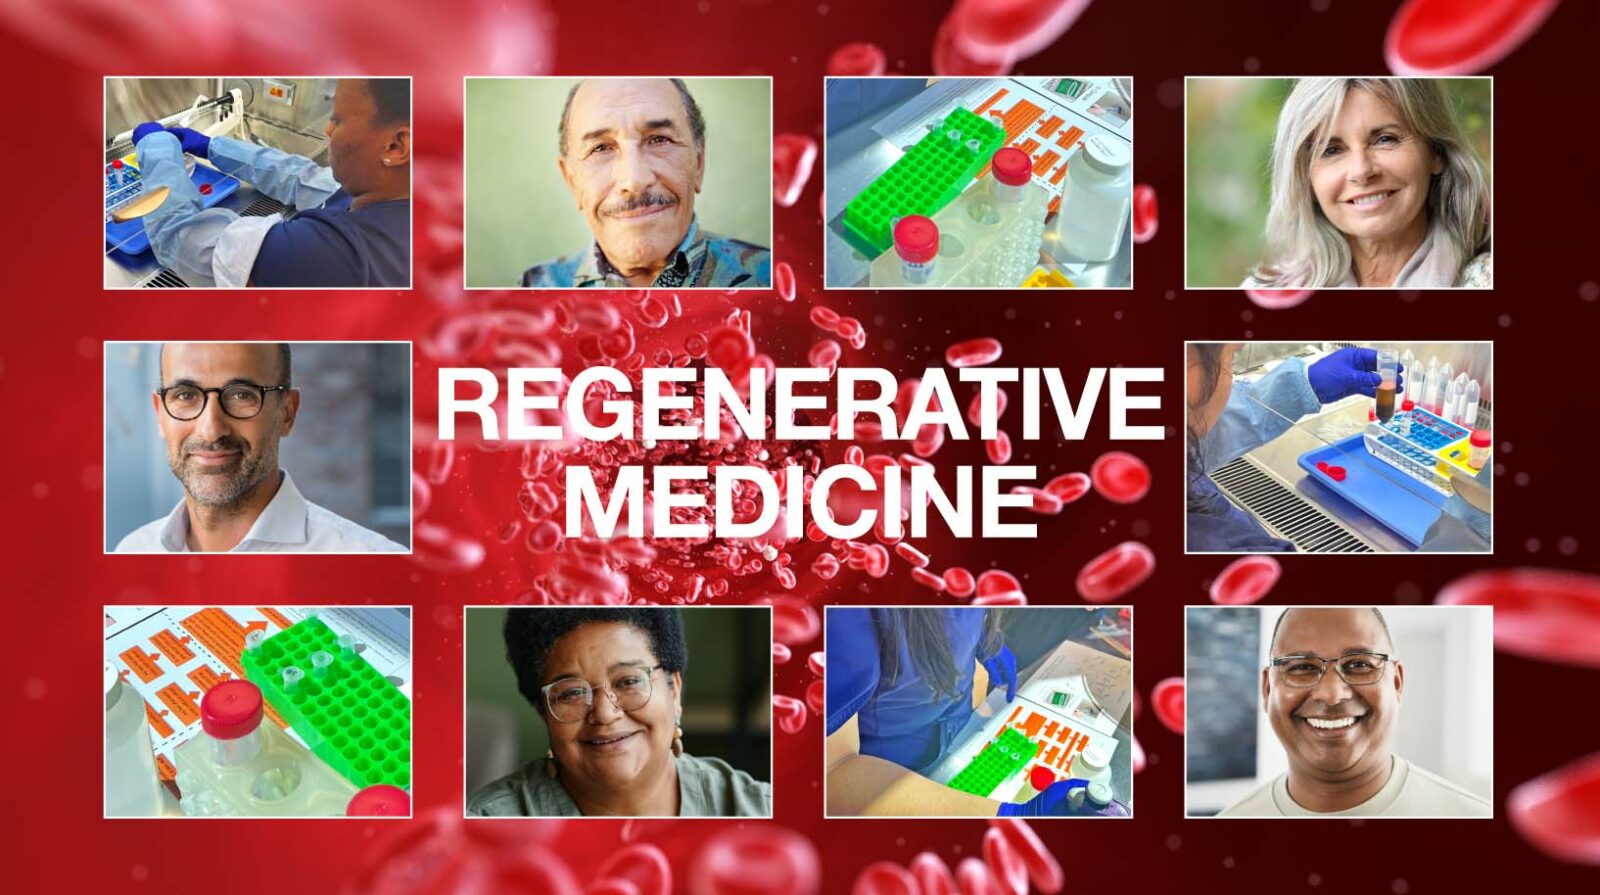 Regenerative Medicine at APICO Pain Management